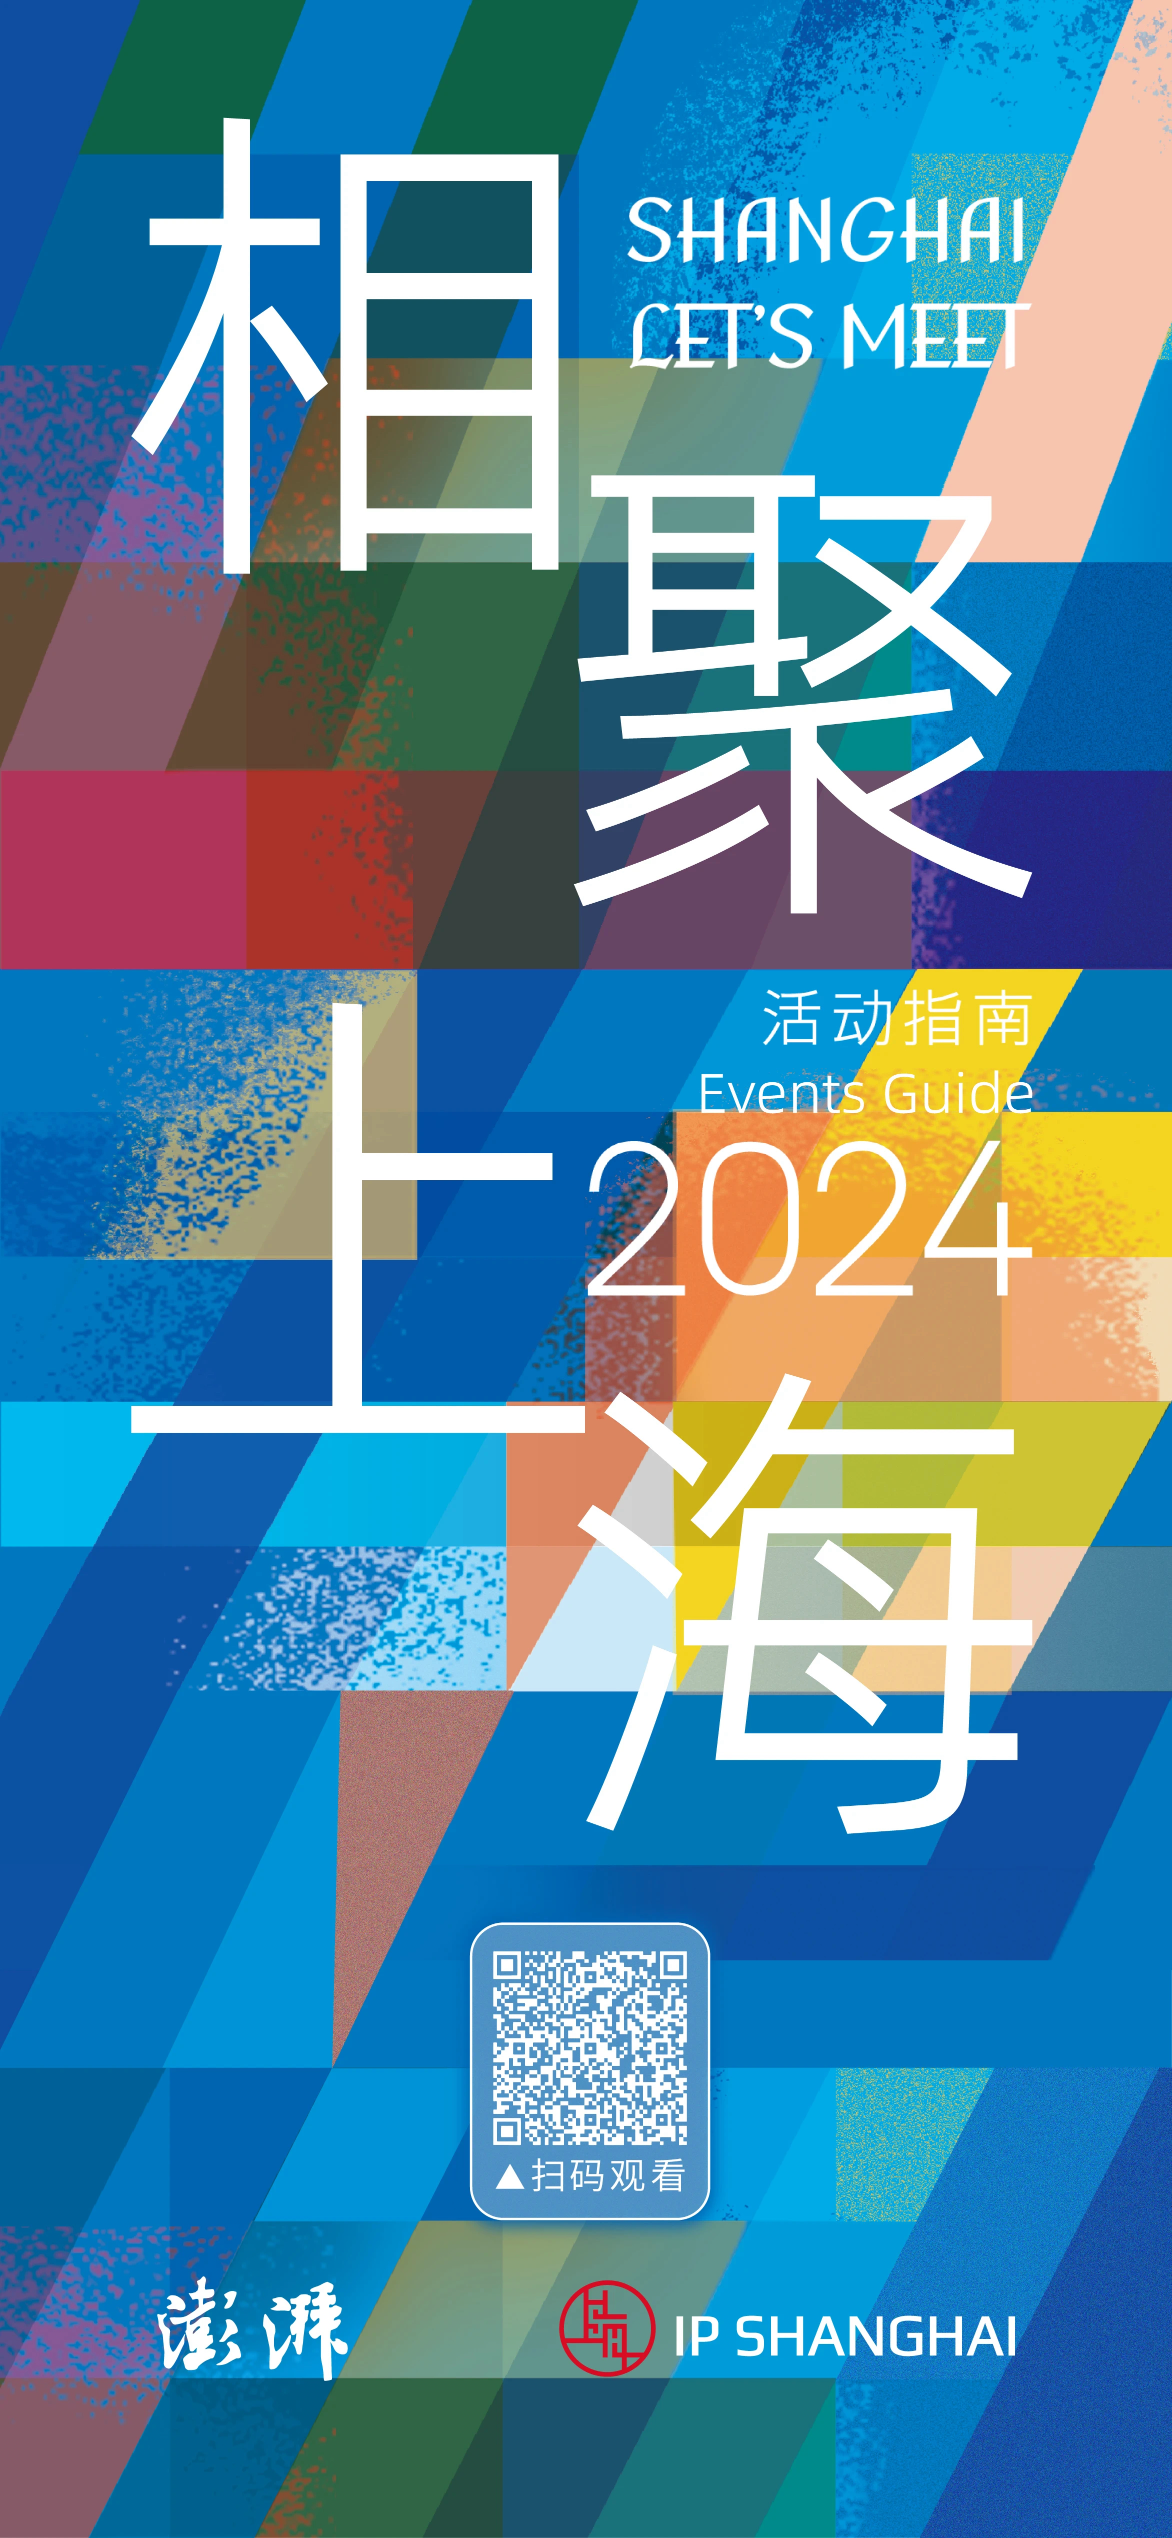 来自上海的盛情邀约：“相聚上海”活动指南（2024）面向全球发布